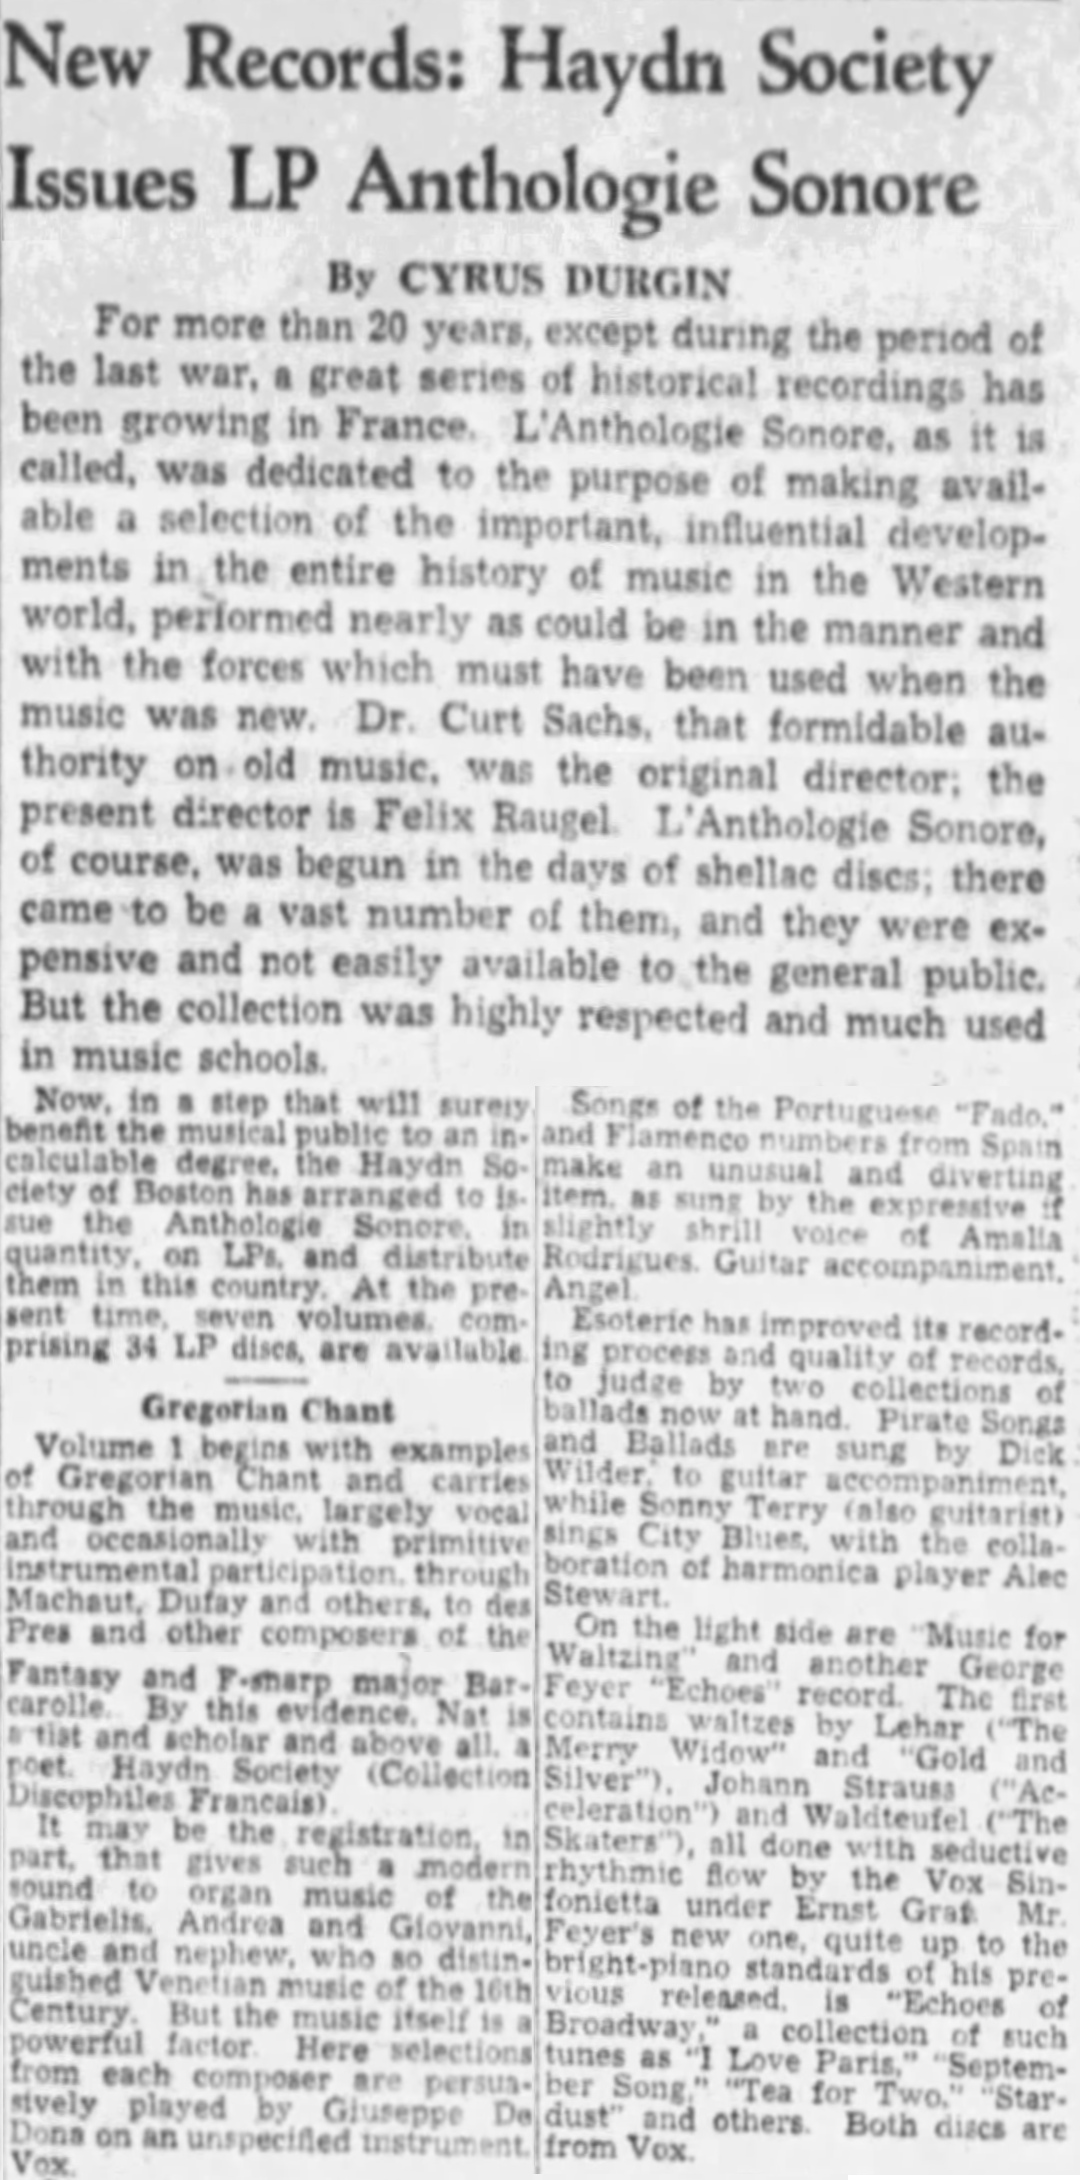 Cyrus DURGIN sur l'«Anthologie Sonore» publiée aus États-Unis par la «The Haydn Society, Inc.», cité du quotidien «The Boston Globe, 20 juin 1954, page 79